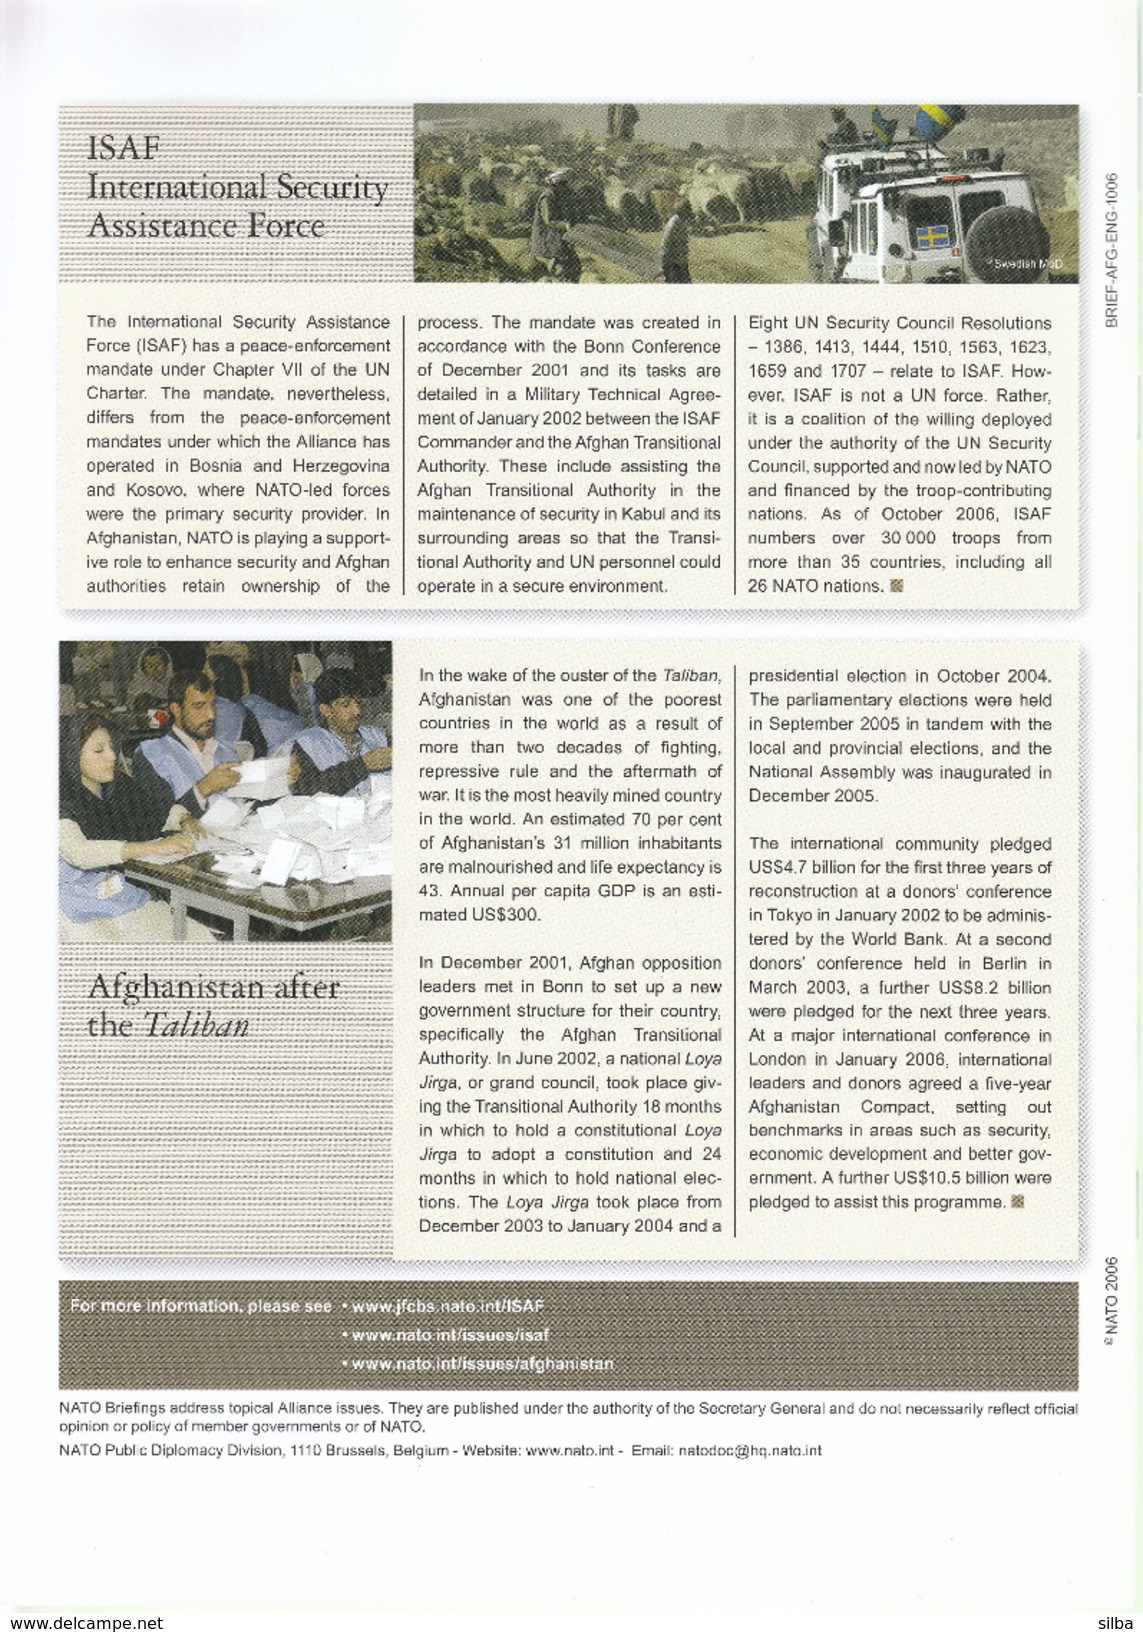 NATO OTAN Briefing Magazine / October 2006 / Afganistan - Military/ War